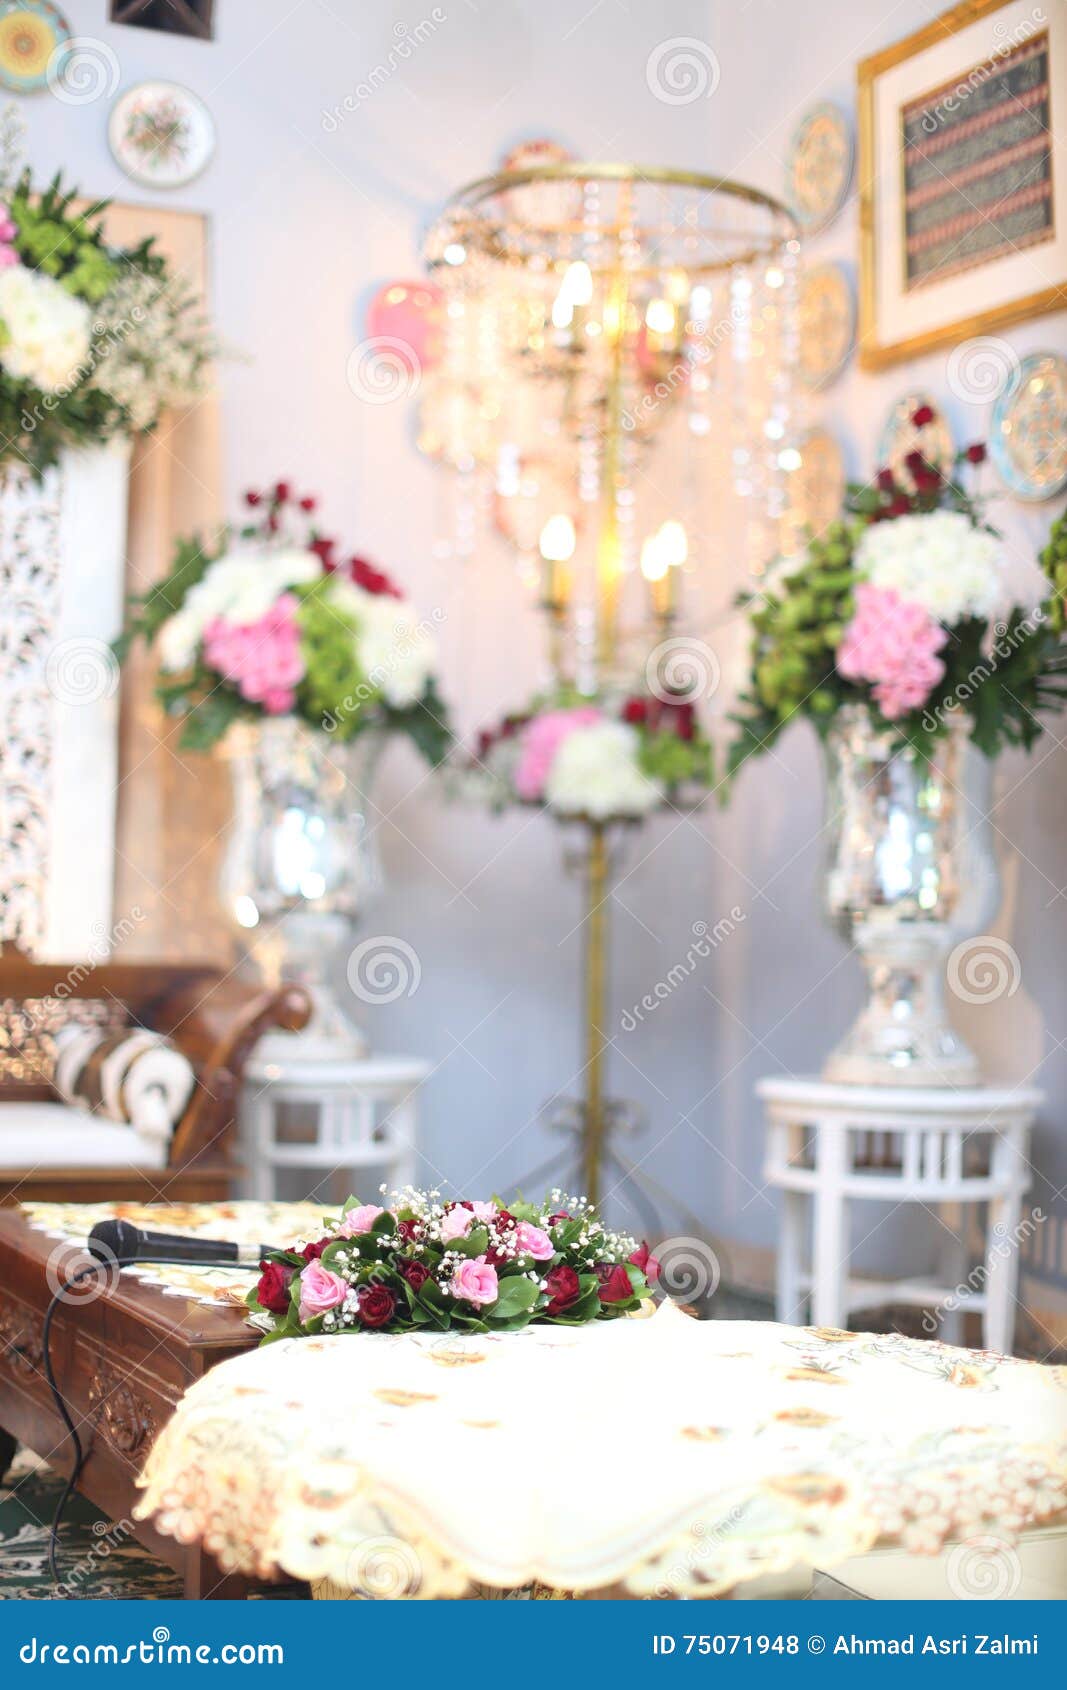 Moslemische Hochzeits-Zeremonie. Raum für moslemische Hochzeitszeremonie